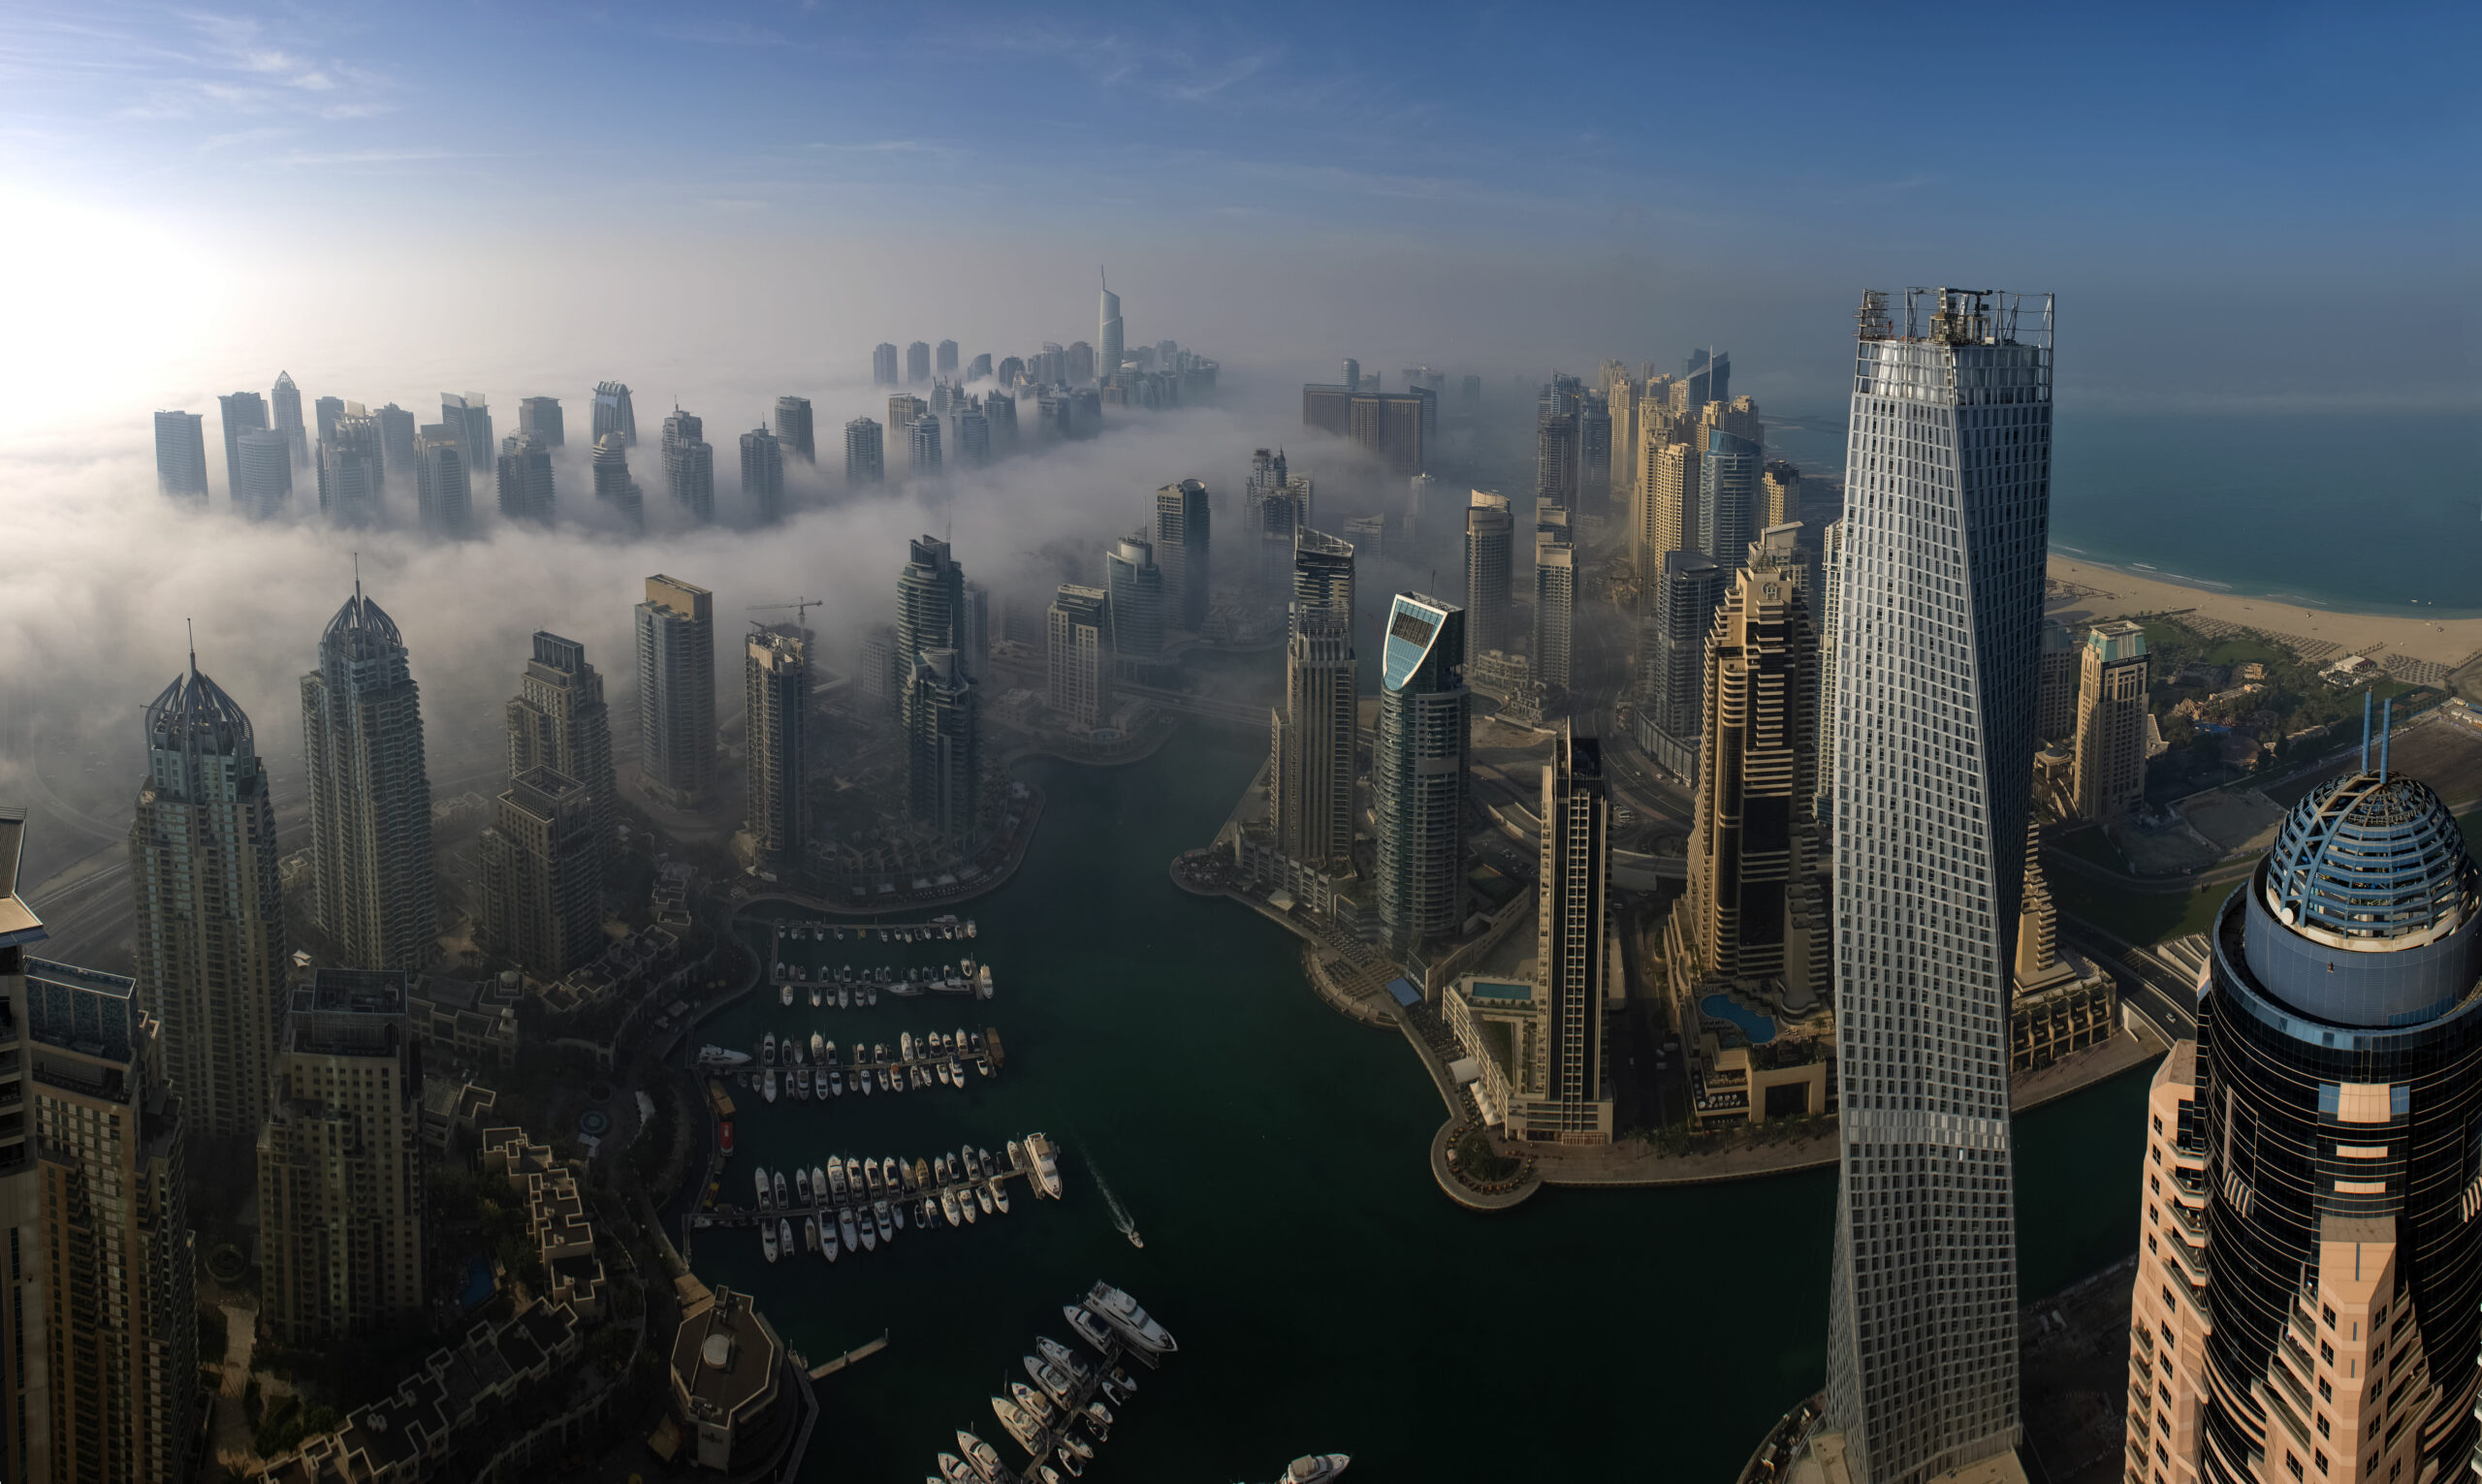 Rosyjski popyt na nieruchomości w Dubaju spowalnia, ale w Chinach rośnie, mówi przewodniczący DAMAC